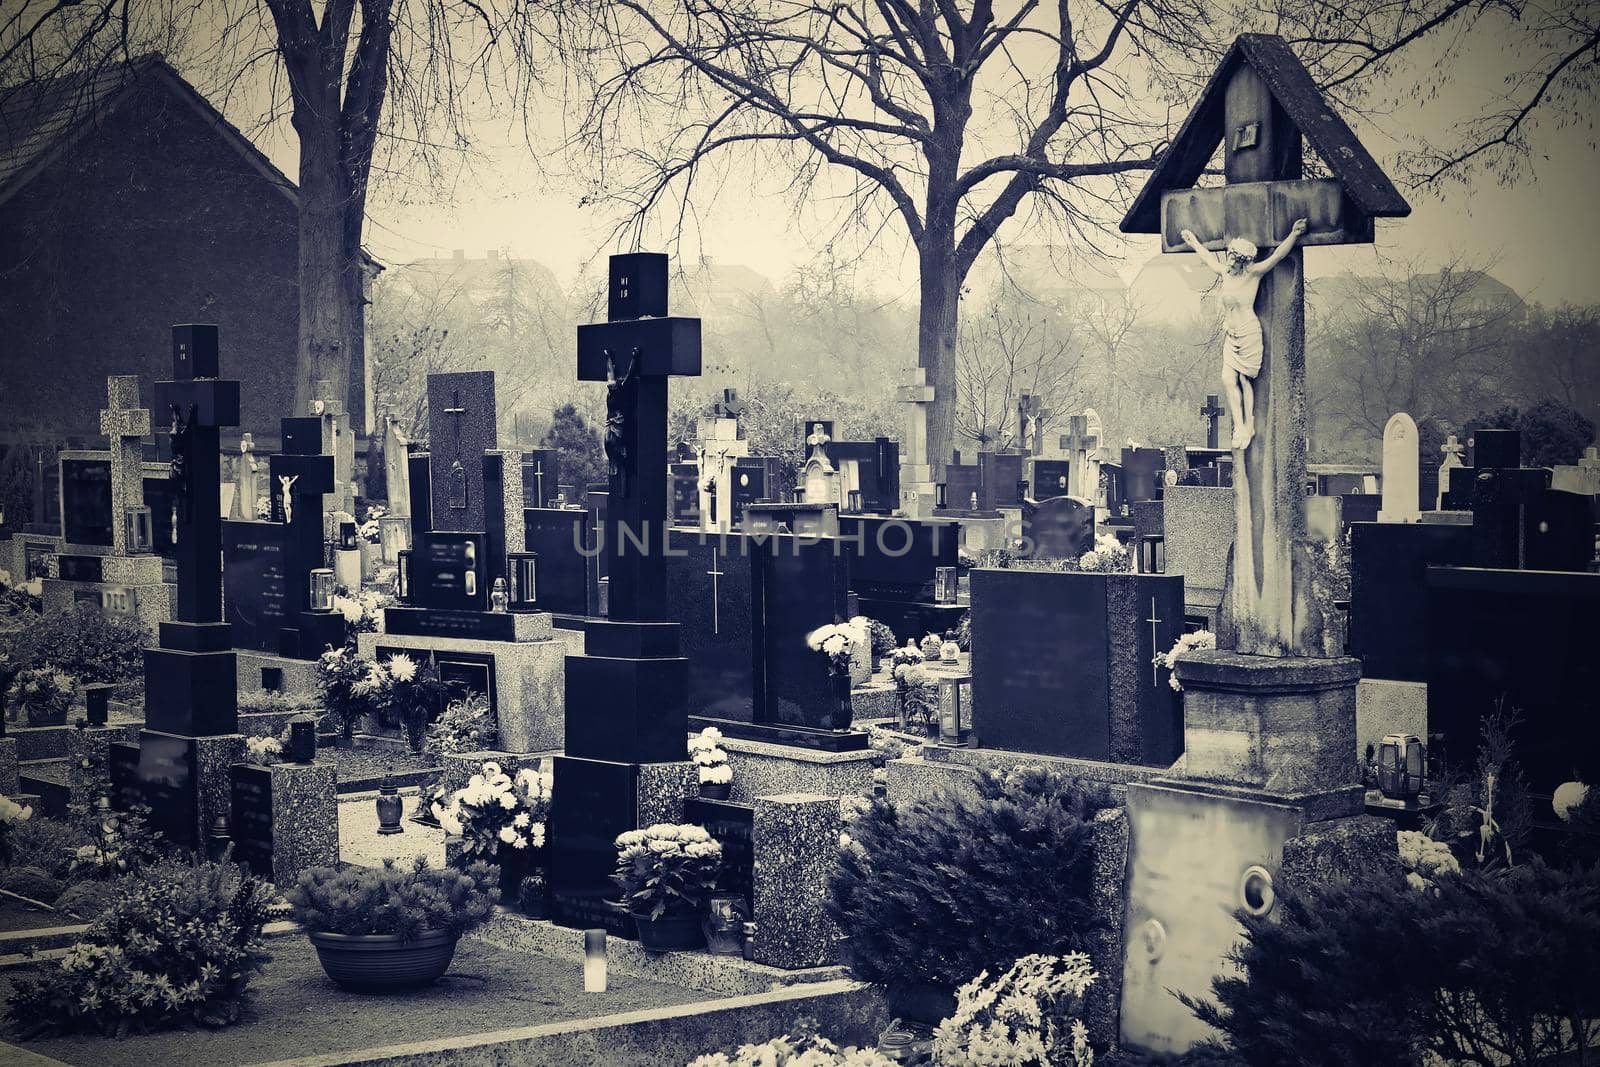 Cemetery blurred background. Halloween